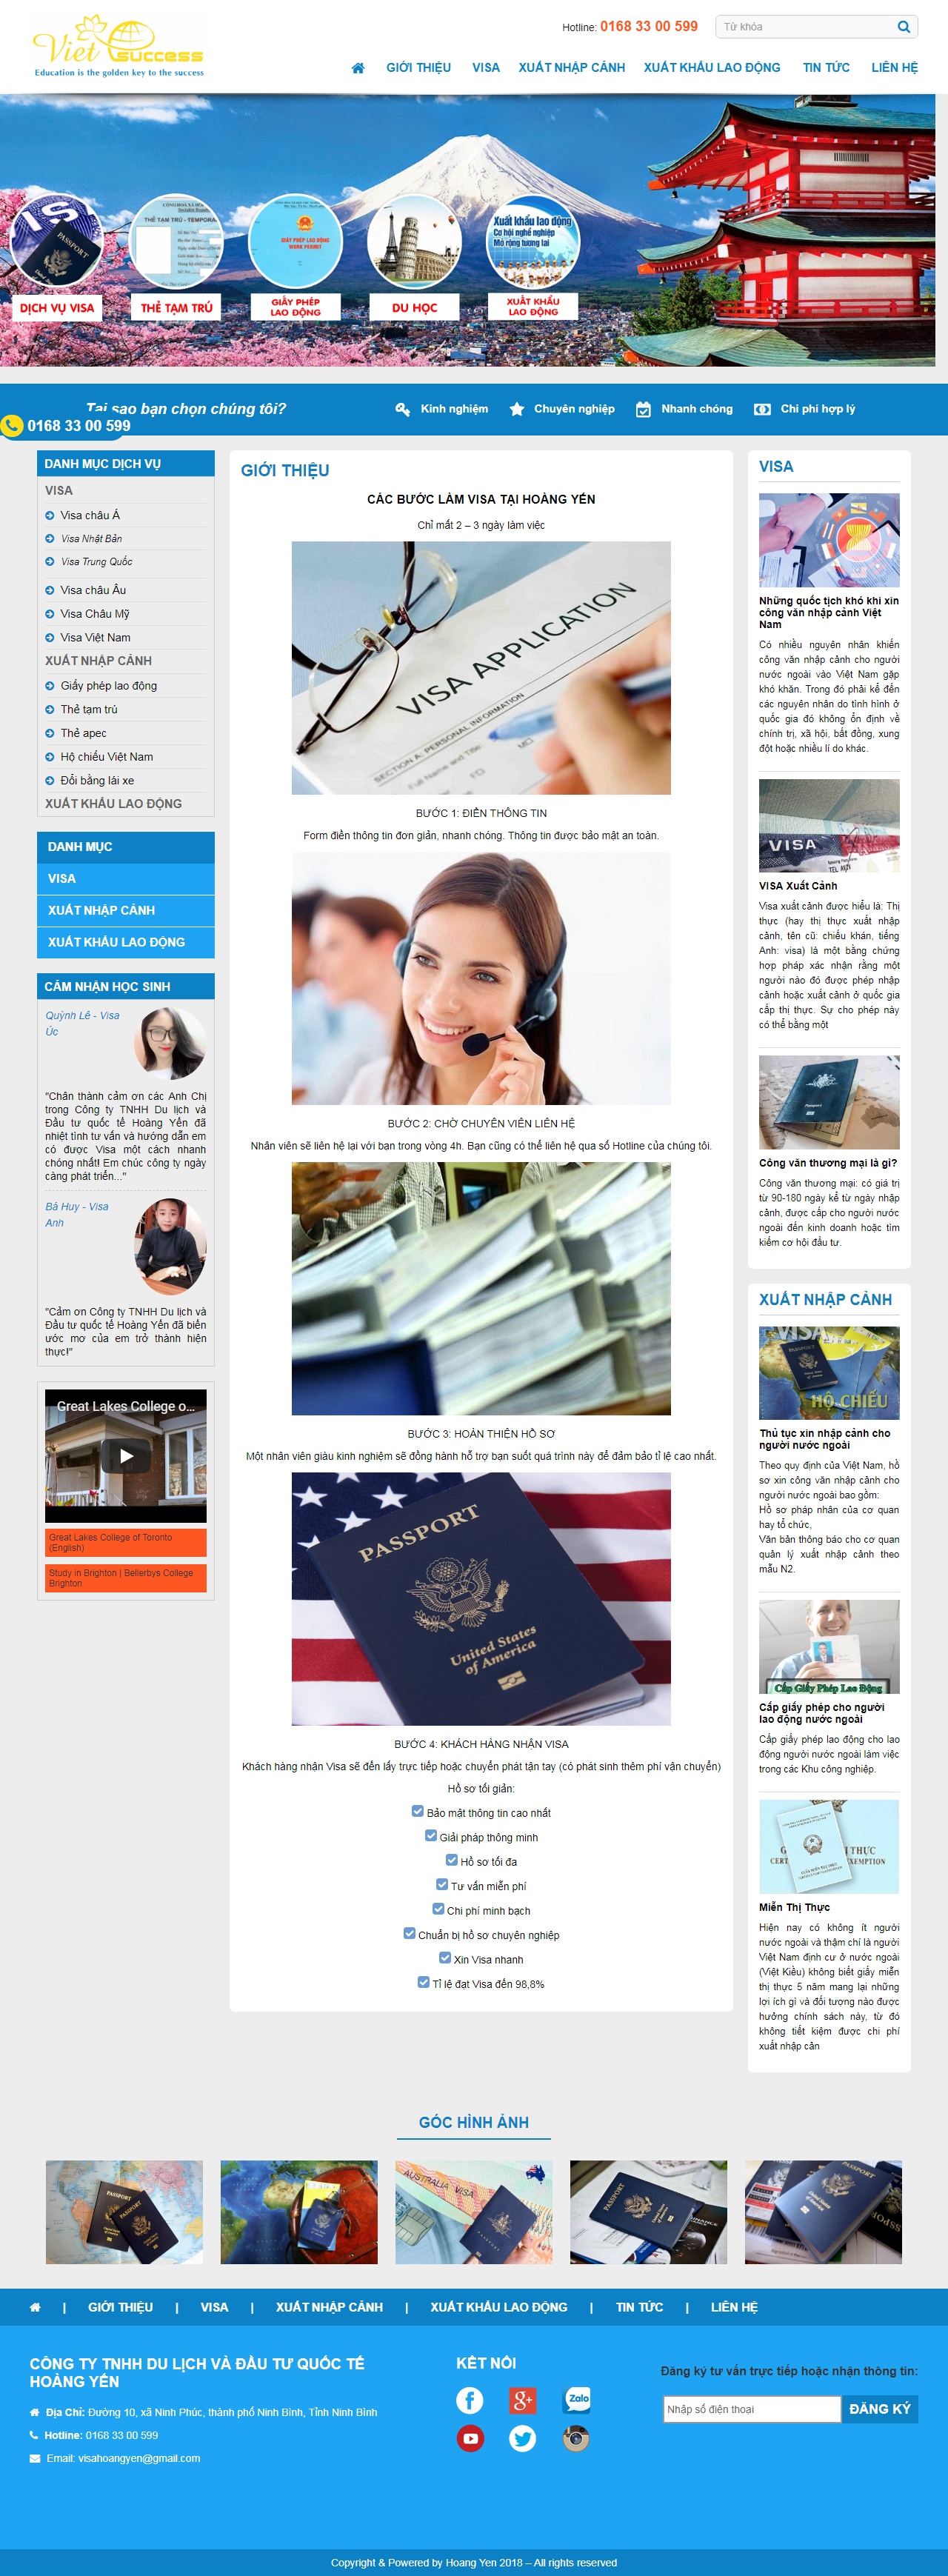 thiết kế web giá rẻ làm visa